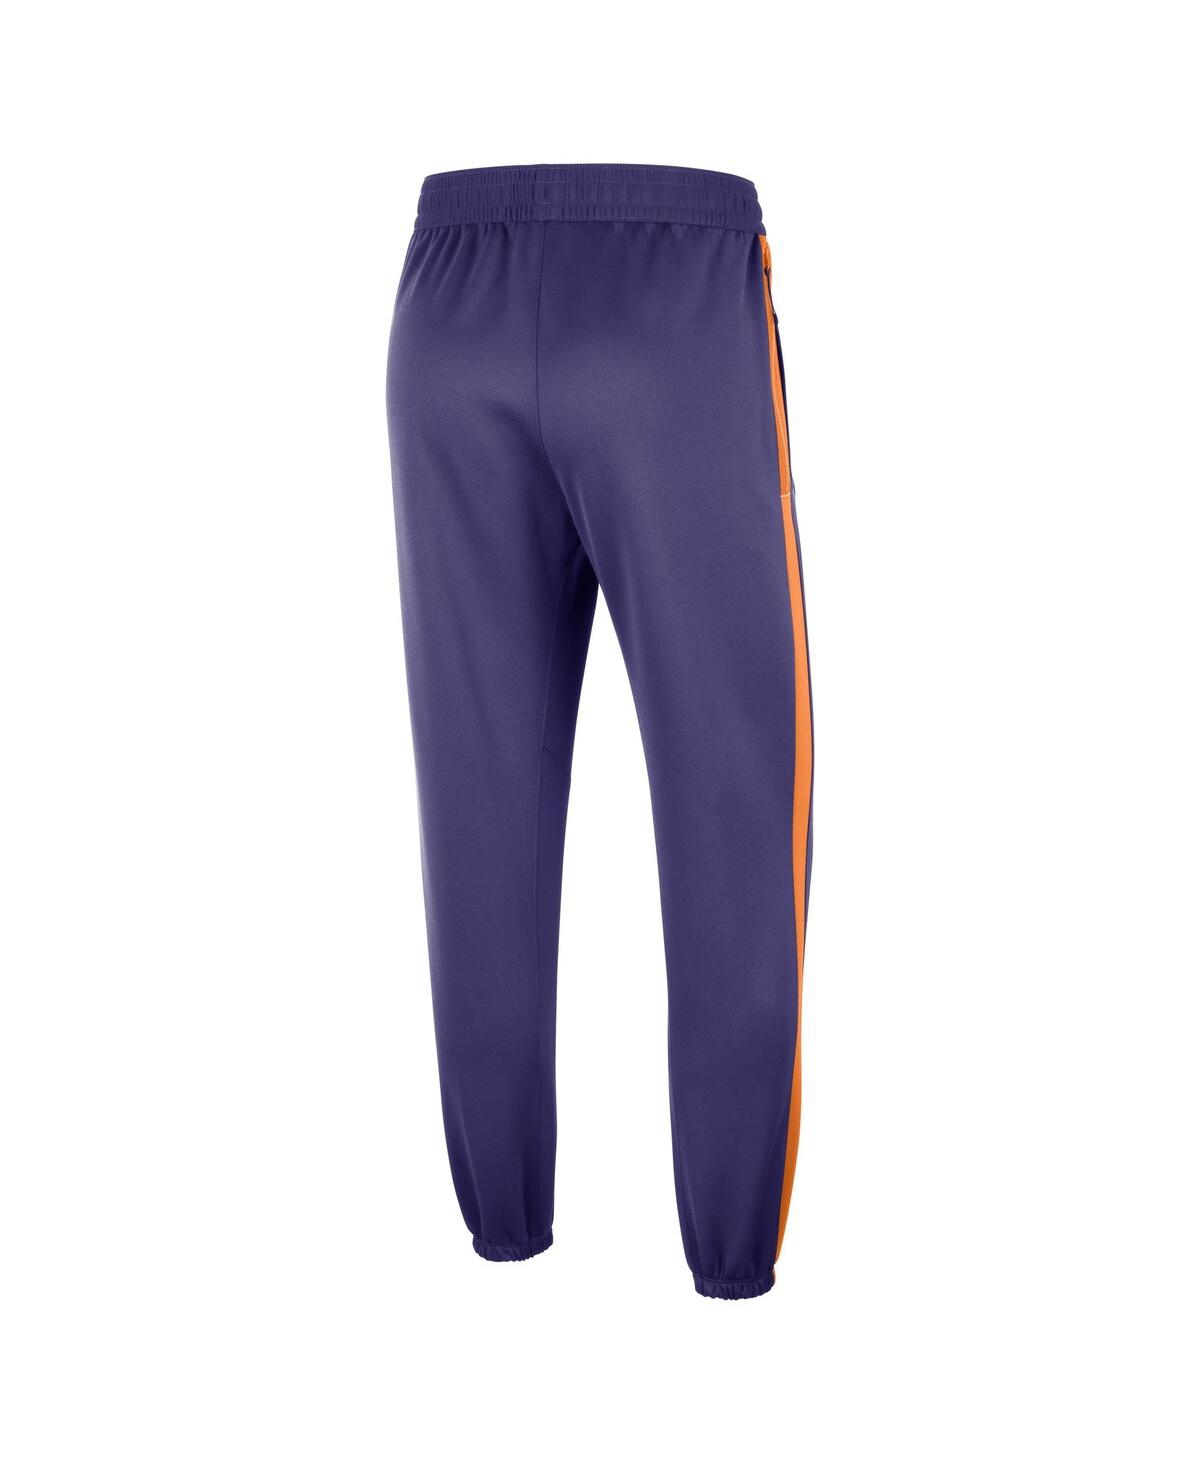 Shop Nike Men's  Purple Phoenix Suns Authentic Showtime Performance Pants